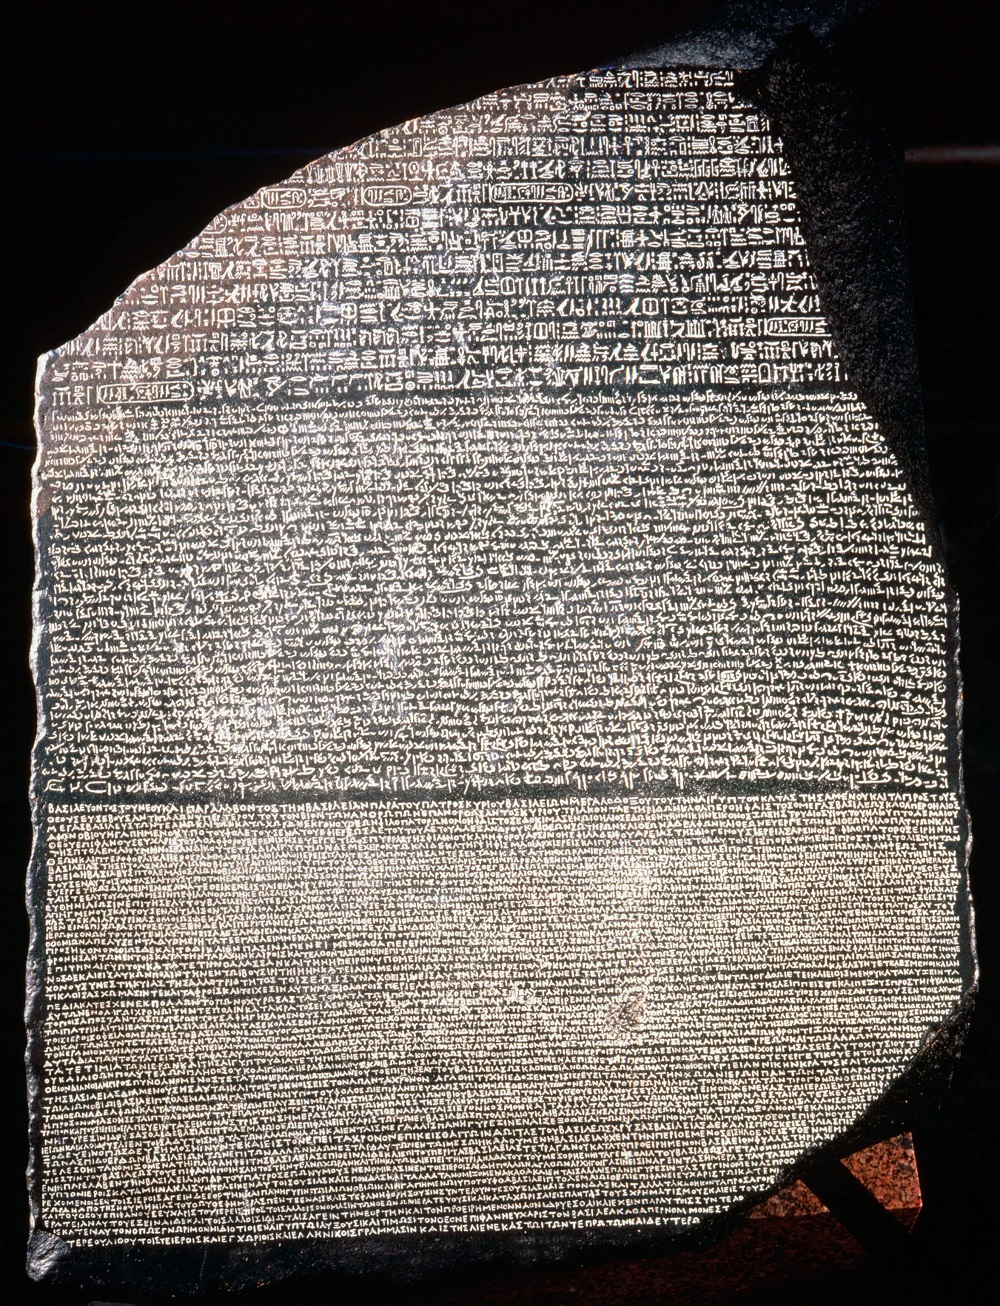 Dù nó chỉ là một mảnh vỡ của bia đá lớn hơn, nhưng những ký tự và biểu tượng được chạm khắc trên bề mặt Phiến đá Rosetta đã giúp các học giả giải mã hệ thống chữ viết của Ai Cập cổ đại, và cuối cùng là vén màn nhiều bí mật của nền văn minh này. Ảnh: Kho lưu trữ Đại học Lịch sử/UIG/ Bridgeman Images.